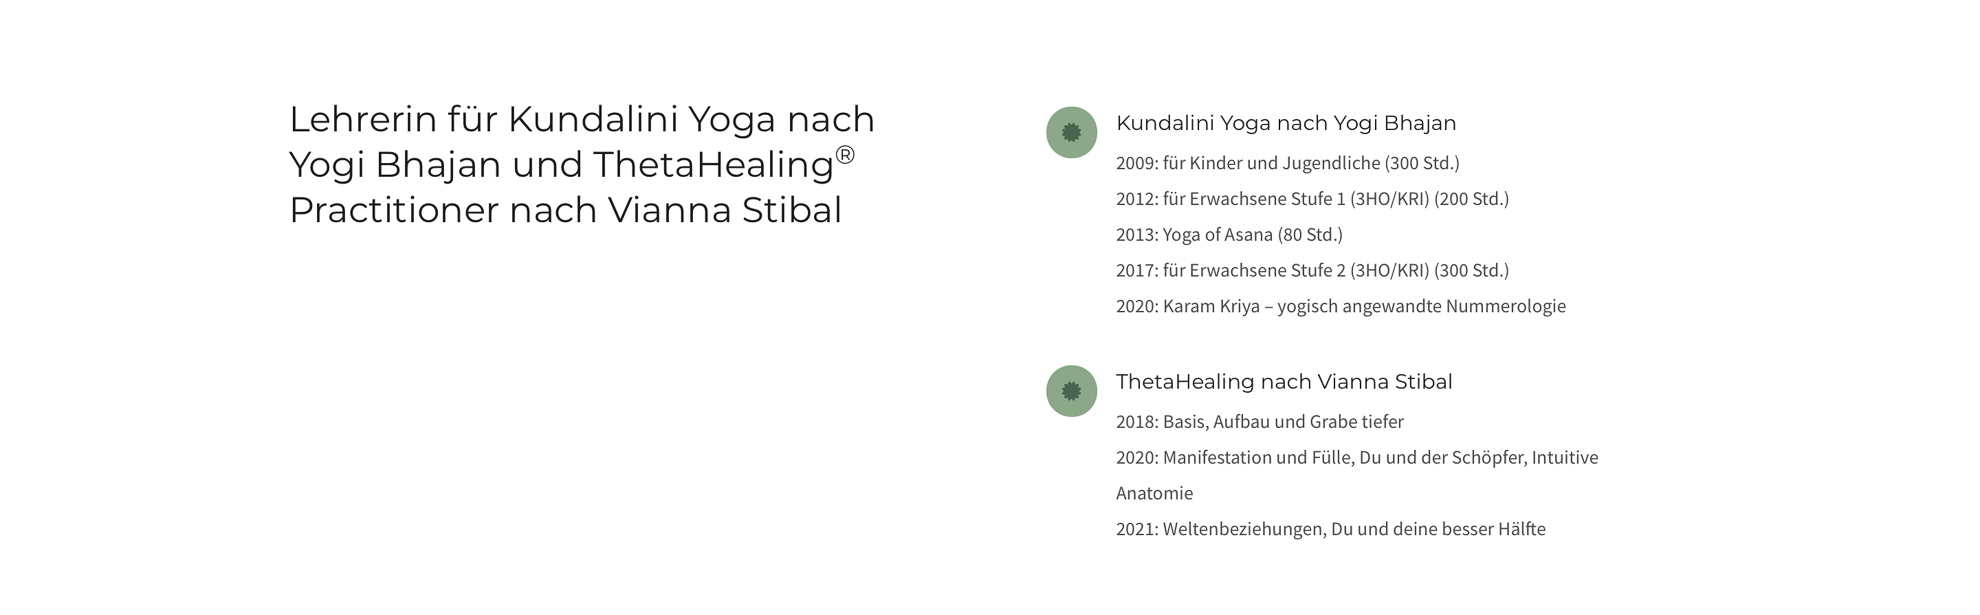 Yoga Lehrerin lasst von Oh Nord Website Studio Website gestalten für einen minimalistischen Stil